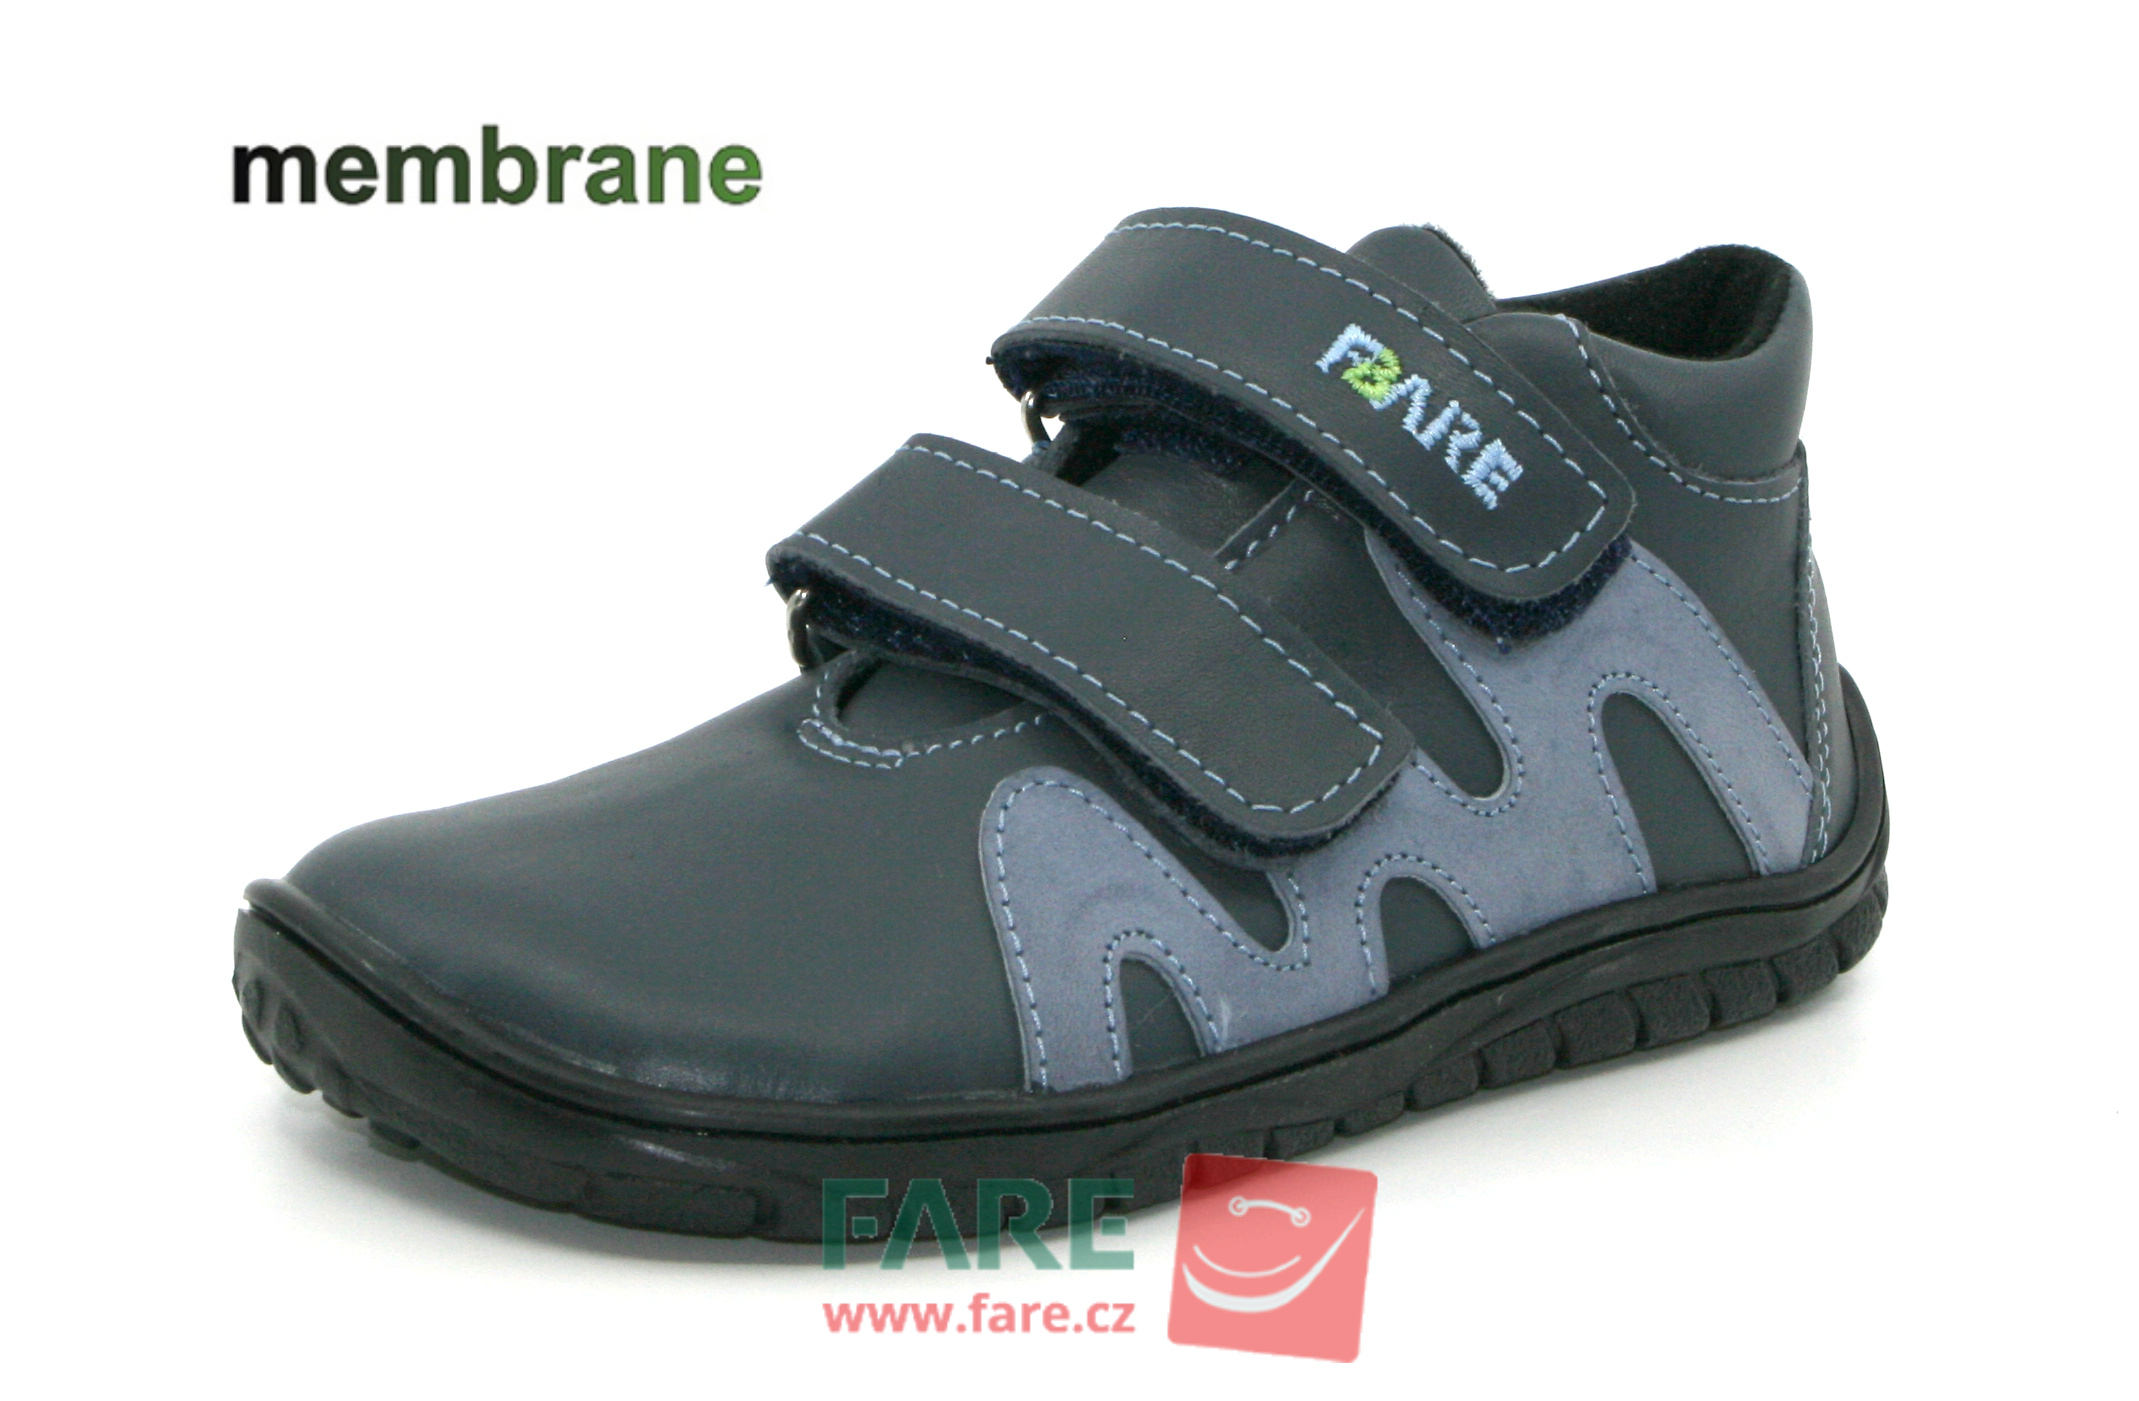 FARE BARE celoroční boty s membránou B5516161 Velikost obuvi: 30